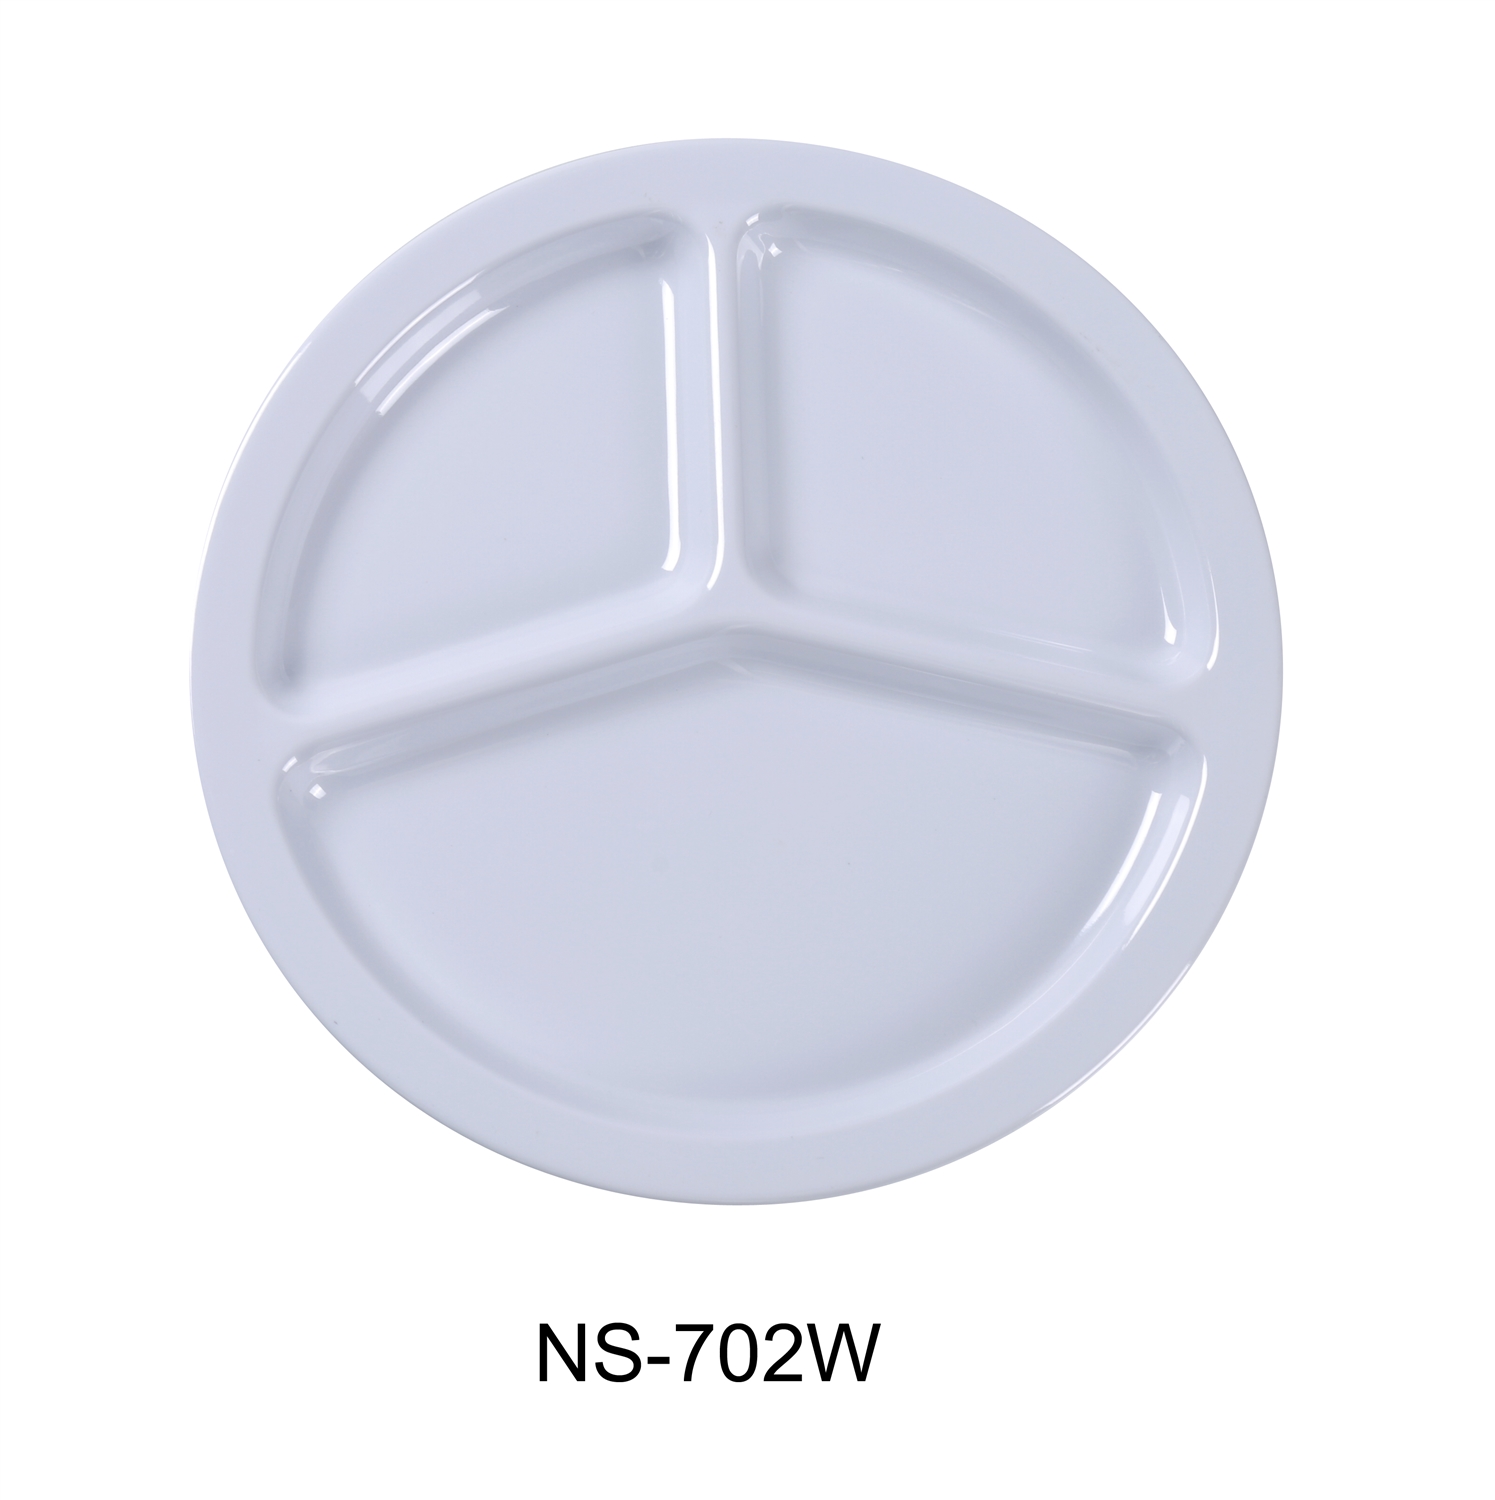 Yanco NS-702W Nessico 3-Compartment Plate, Melamine, White Color - by Celebrate Festival Inc